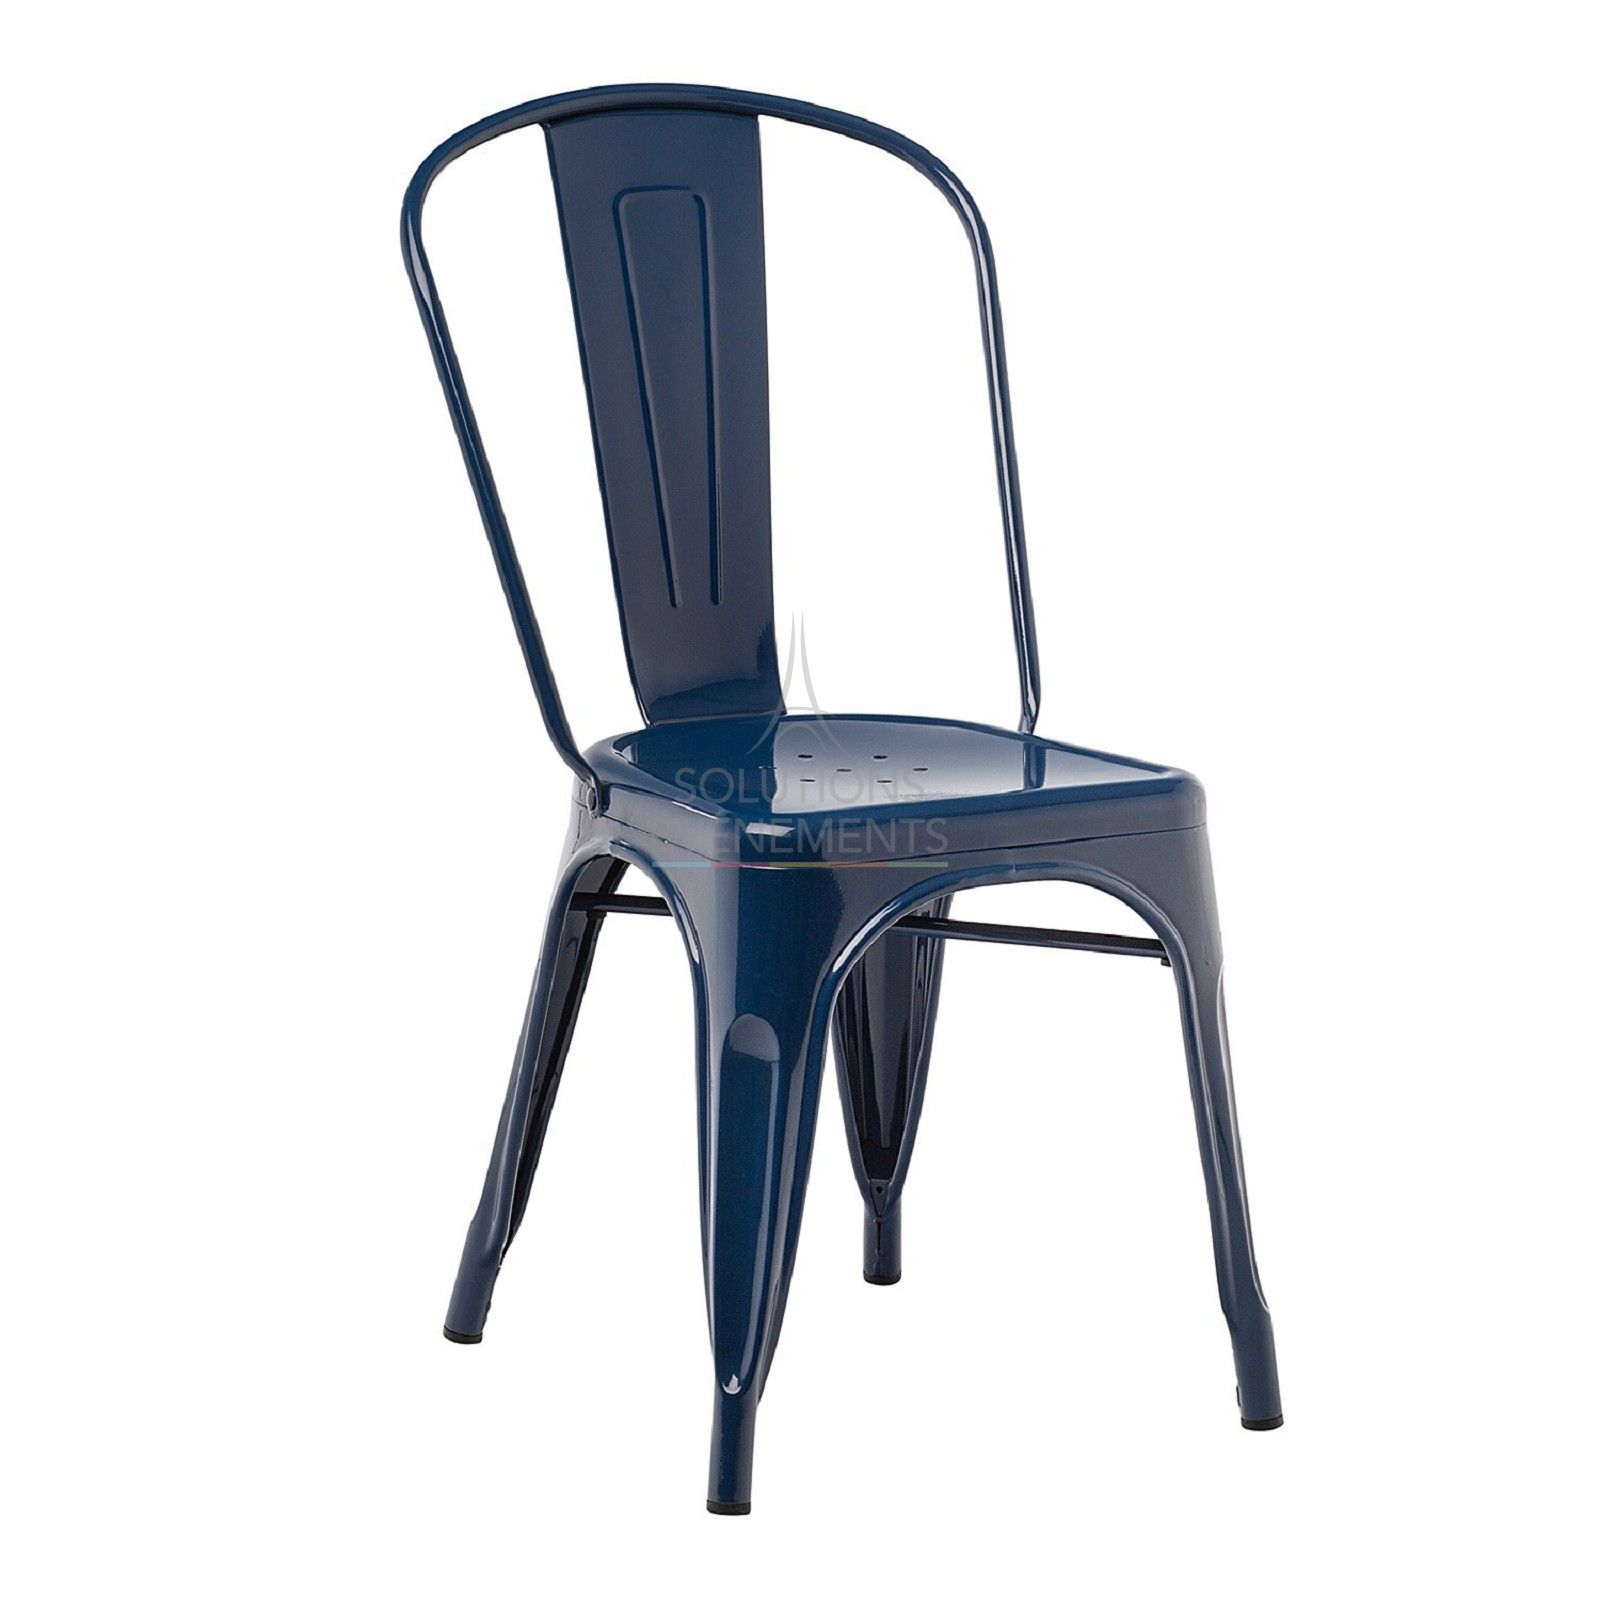 Location de chaise industrielle en metal de couleur bleue